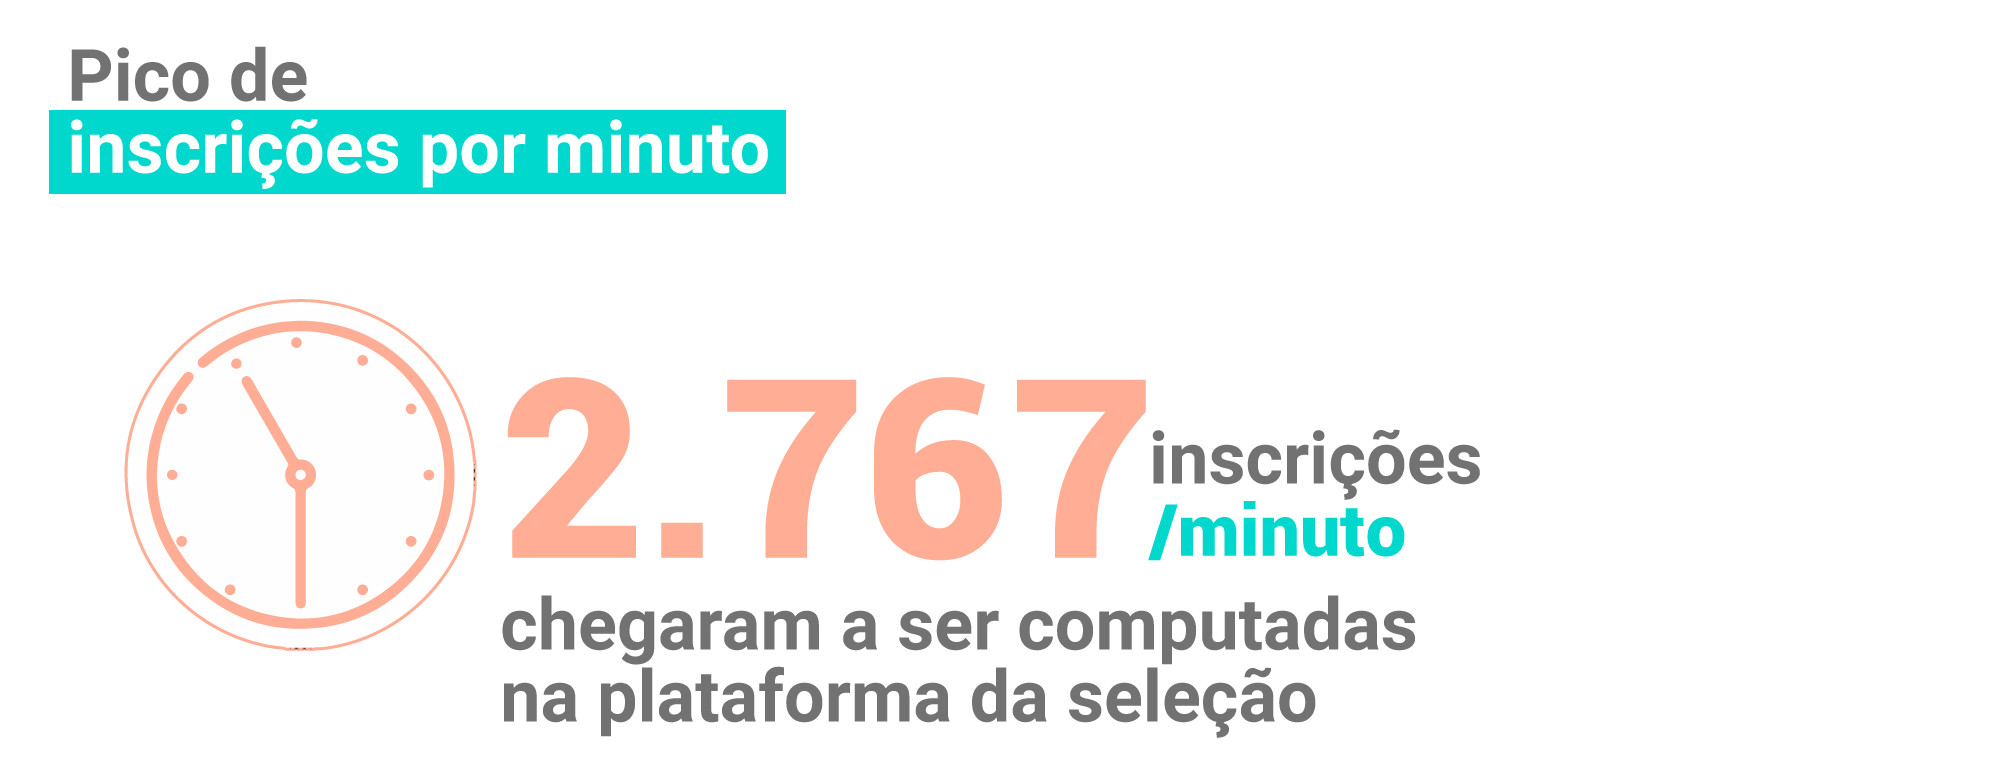 O portal computou até 2.767 inscrições por minuto